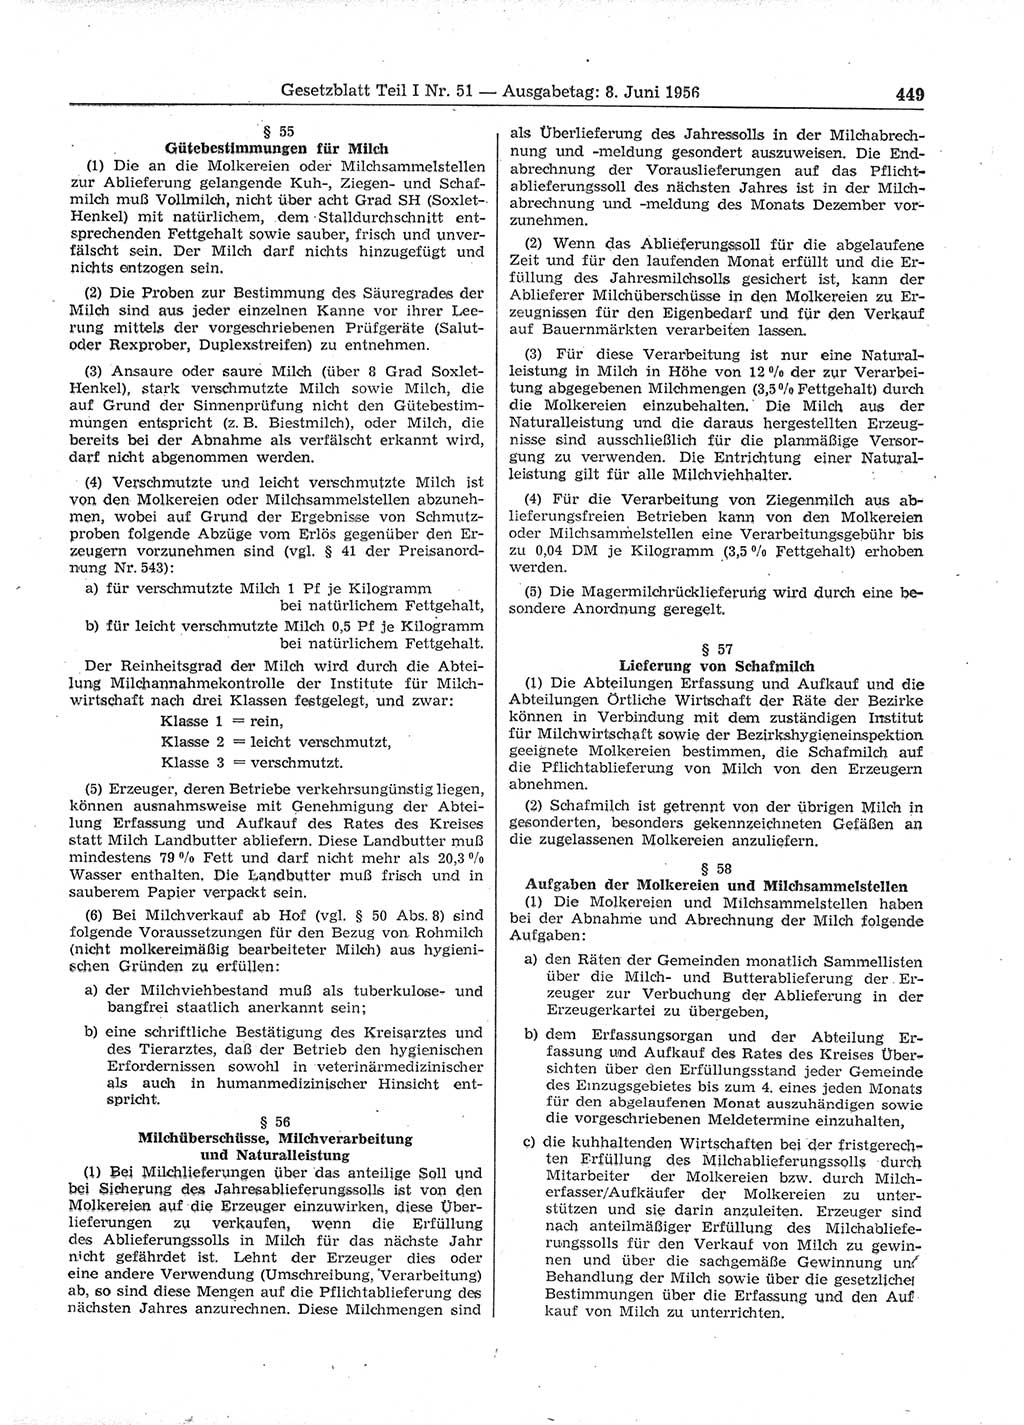 Gesetzblatt (GBl.) der Deutschen Demokratischen Republik (DDR) Teil Ⅰ 1956, Seite 449 (GBl. DDR Ⅰ 1956, S. 449)